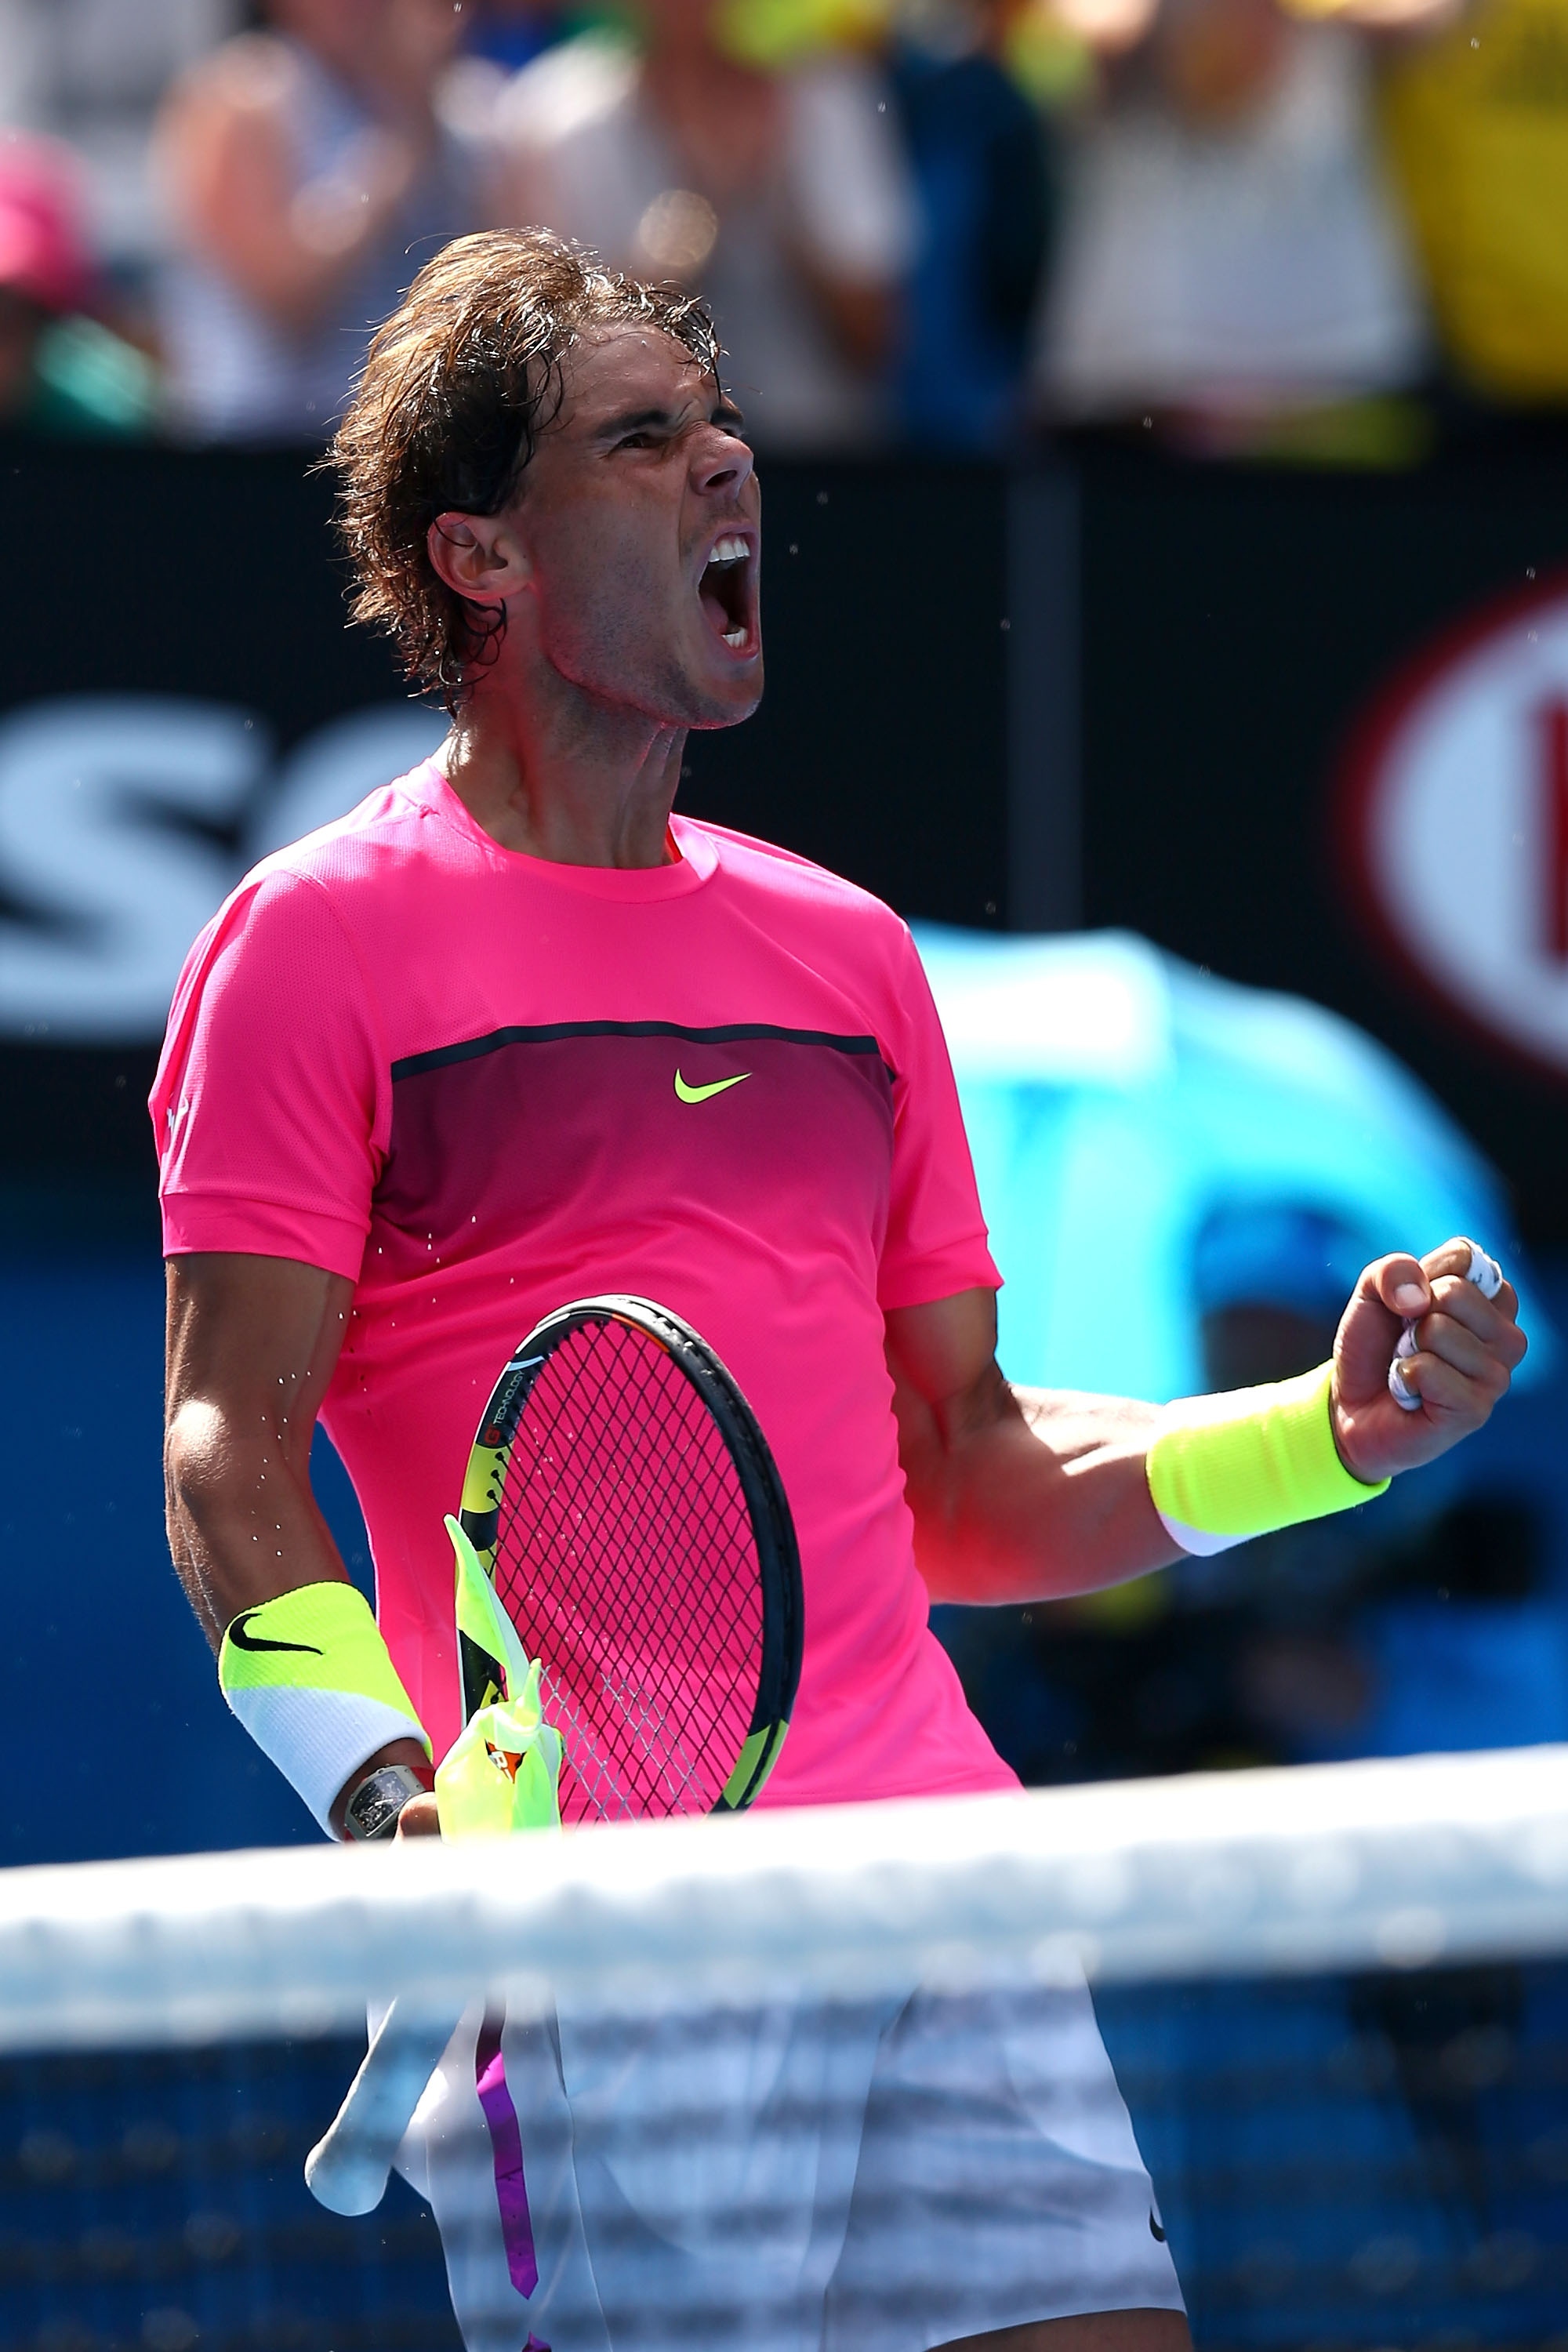 Rafael Nadal vs Mikhail Youzhny Open de Australia 2015 Pict. 16